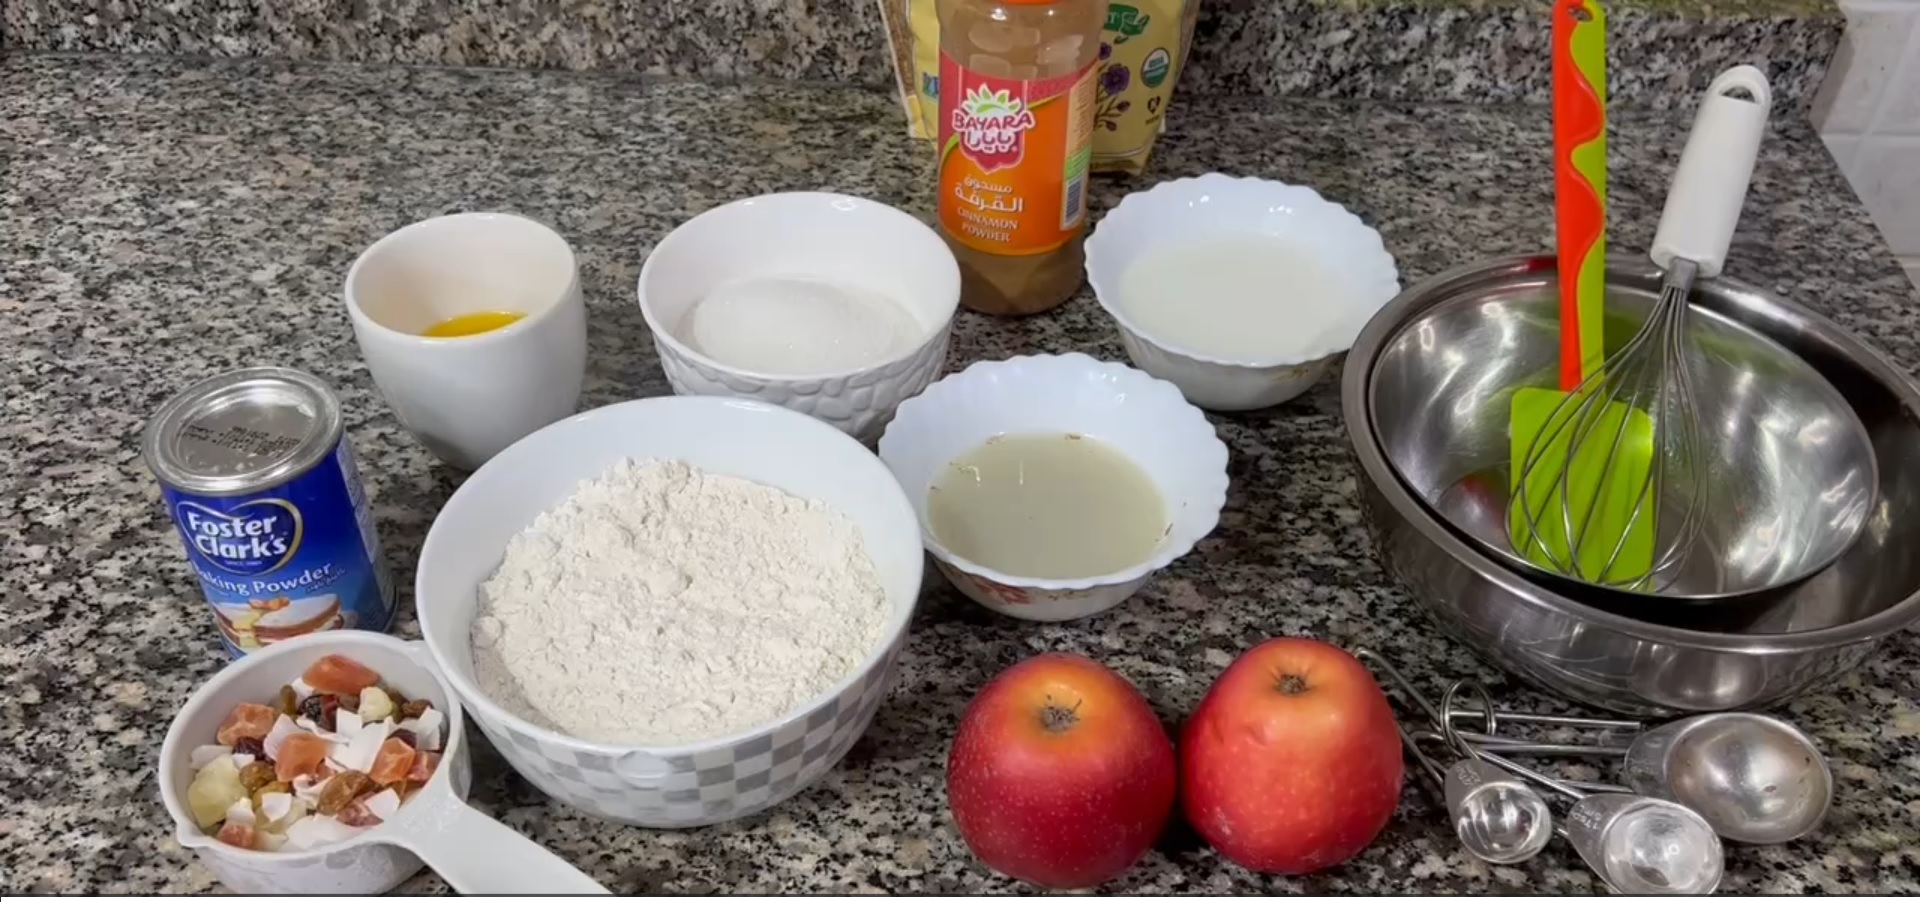 Ingredients to make delish apple muffiins